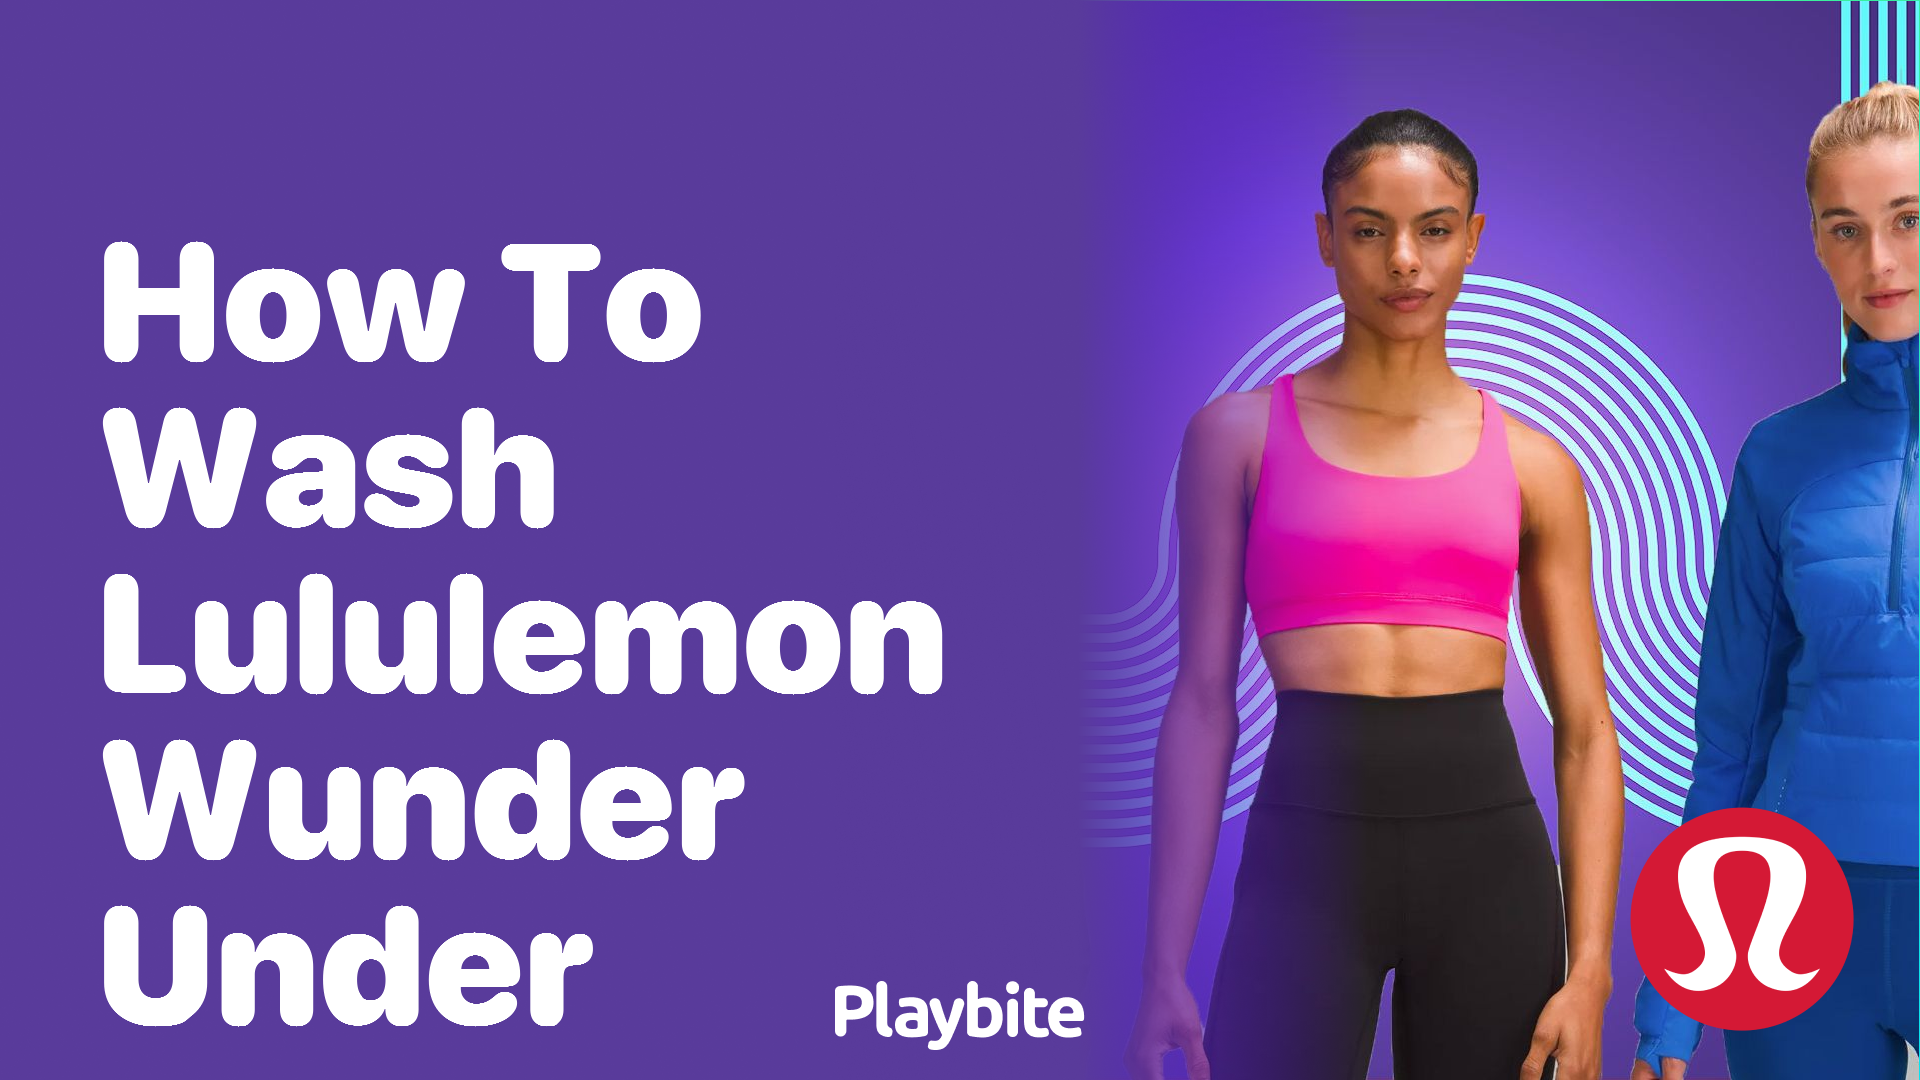 How to Wash Lululemon Wunder Under Properly - Playbite